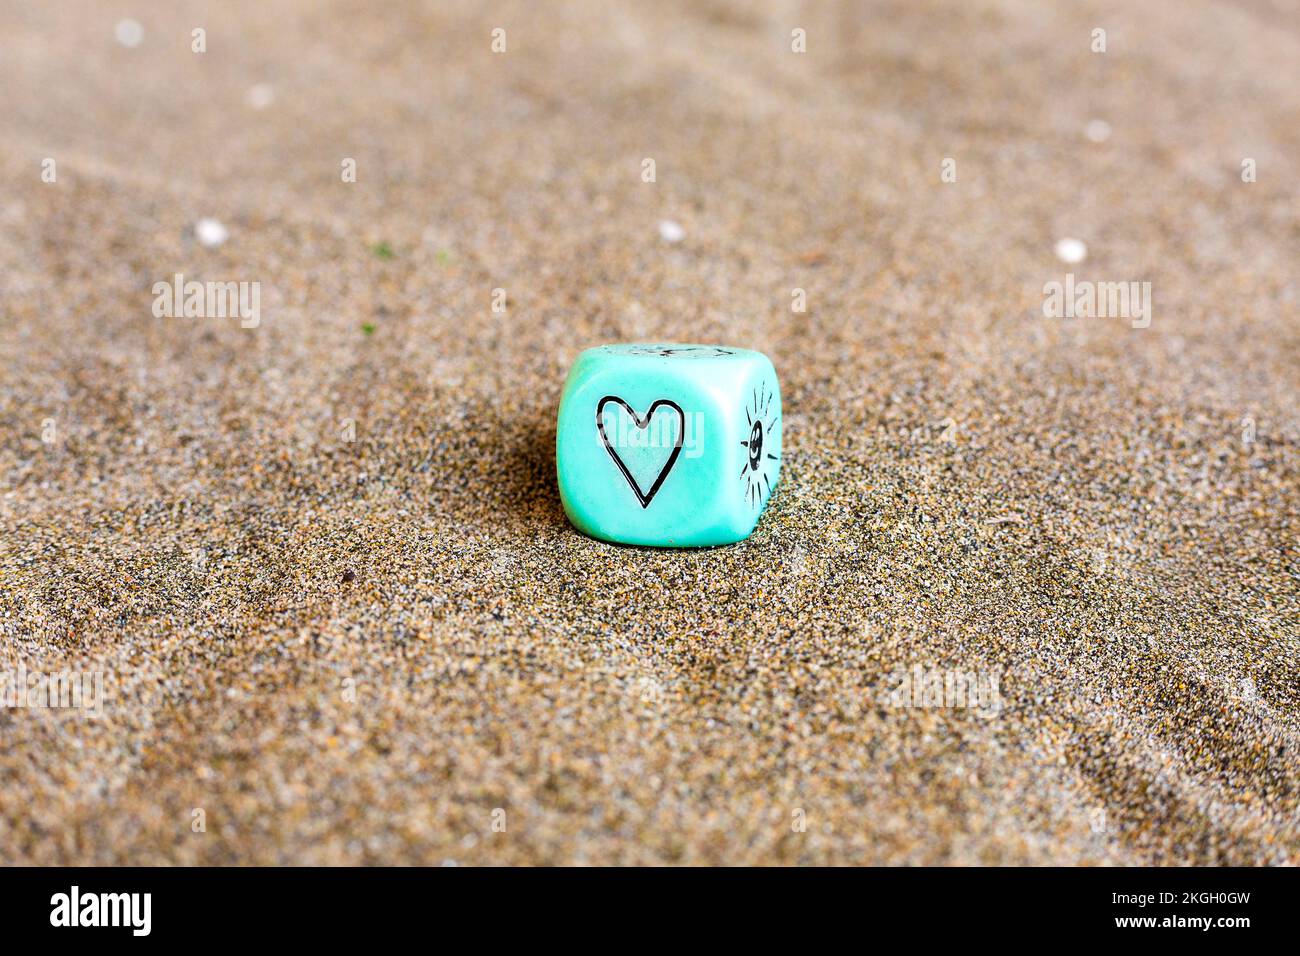 Herz- und Sonnenwettersymbole an den Seiten des blu-Plastikwürfels. Lustige Spielwürfel auf Sand. Valentinstag-Konzept. Liebessymbol. Nahaufnahme mit Stockfoto